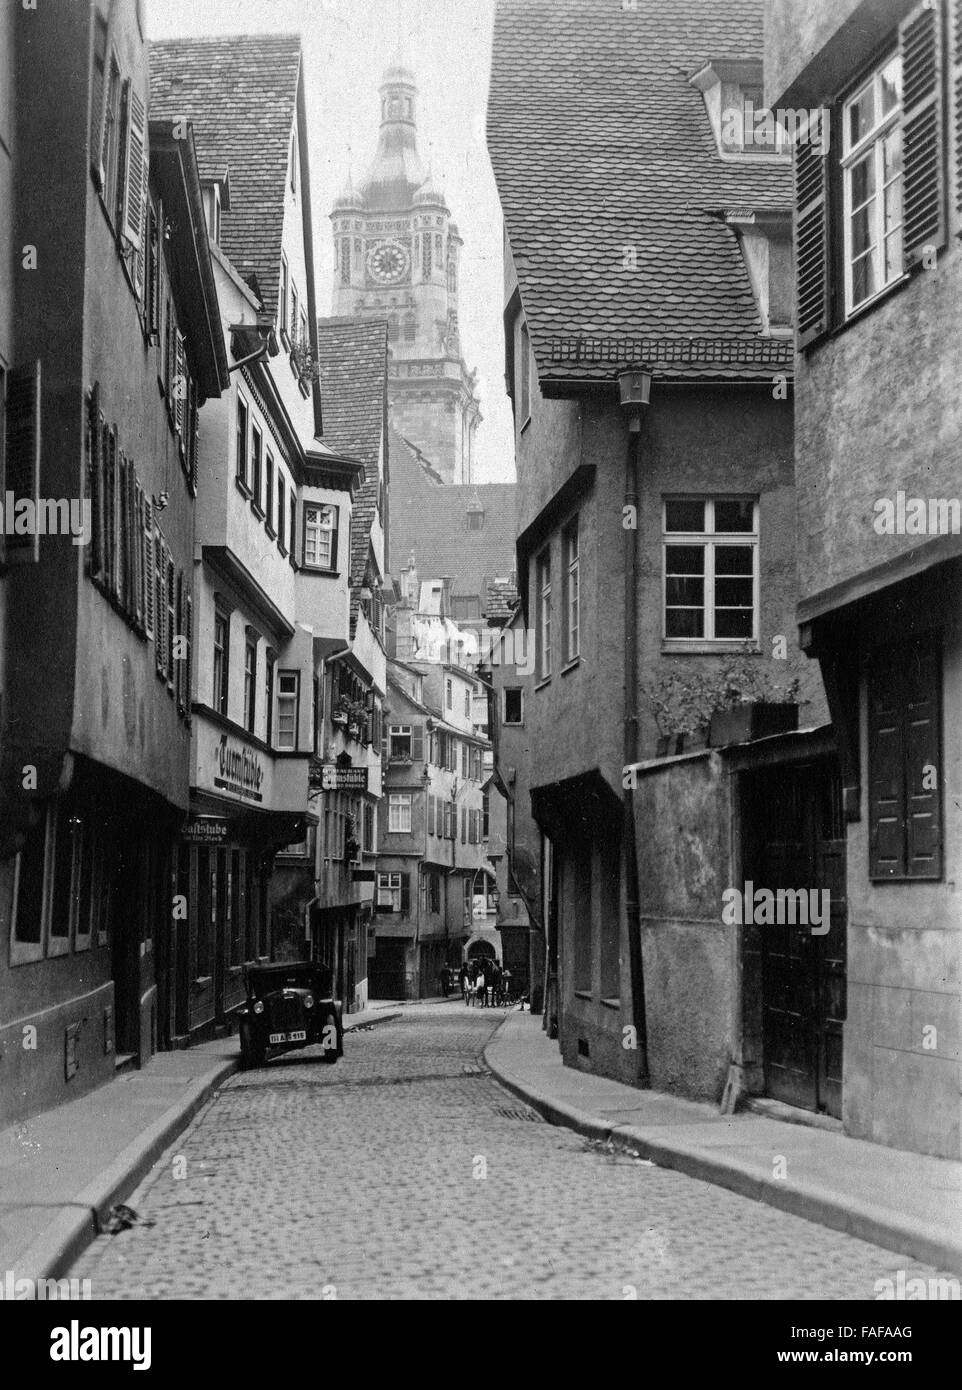 Blick in Die Turmstraße in der Innenstadt von Stuttgart, Deutschland, 1930er Jahre. Blick auf Turmstrasse Lane bei der Stadt Stuttgart, Deutschland der 1930er Jahre. Stockfoto